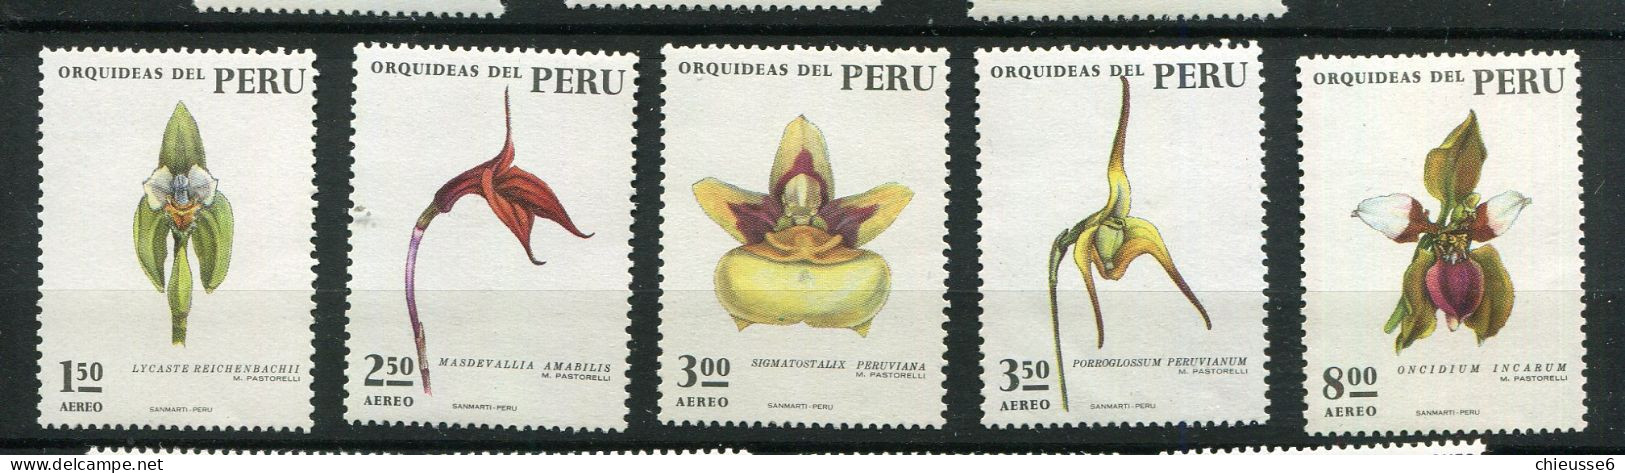 Perou ** - N° 356 à 360 - Orchidées - Perù